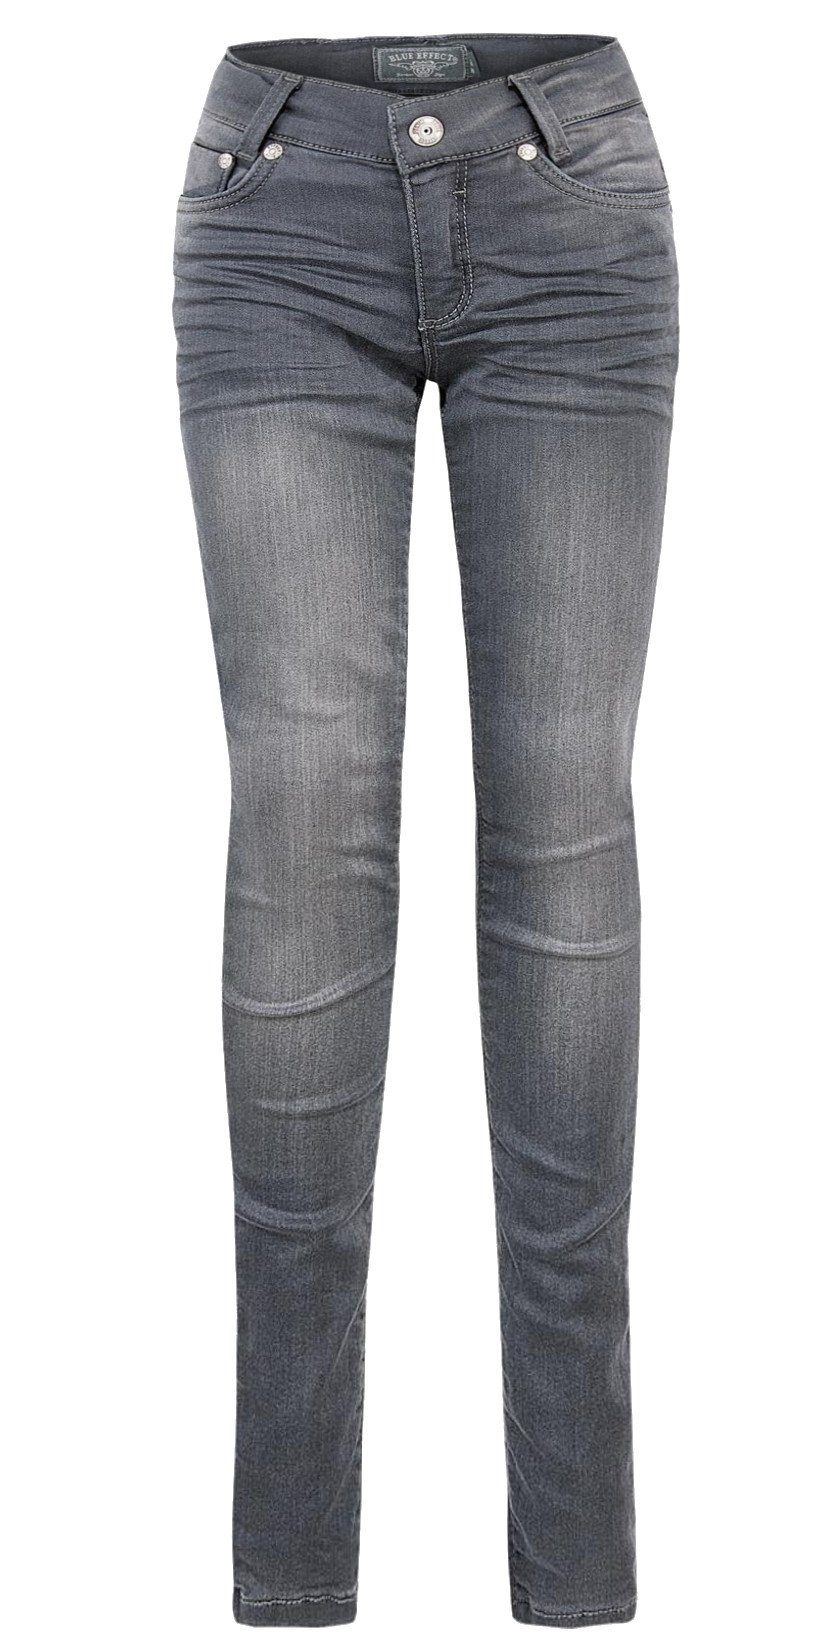 stretch EFFECT Skinny ultra Jeans dark Regular-fit-Jeans grey regular Hose BLUE